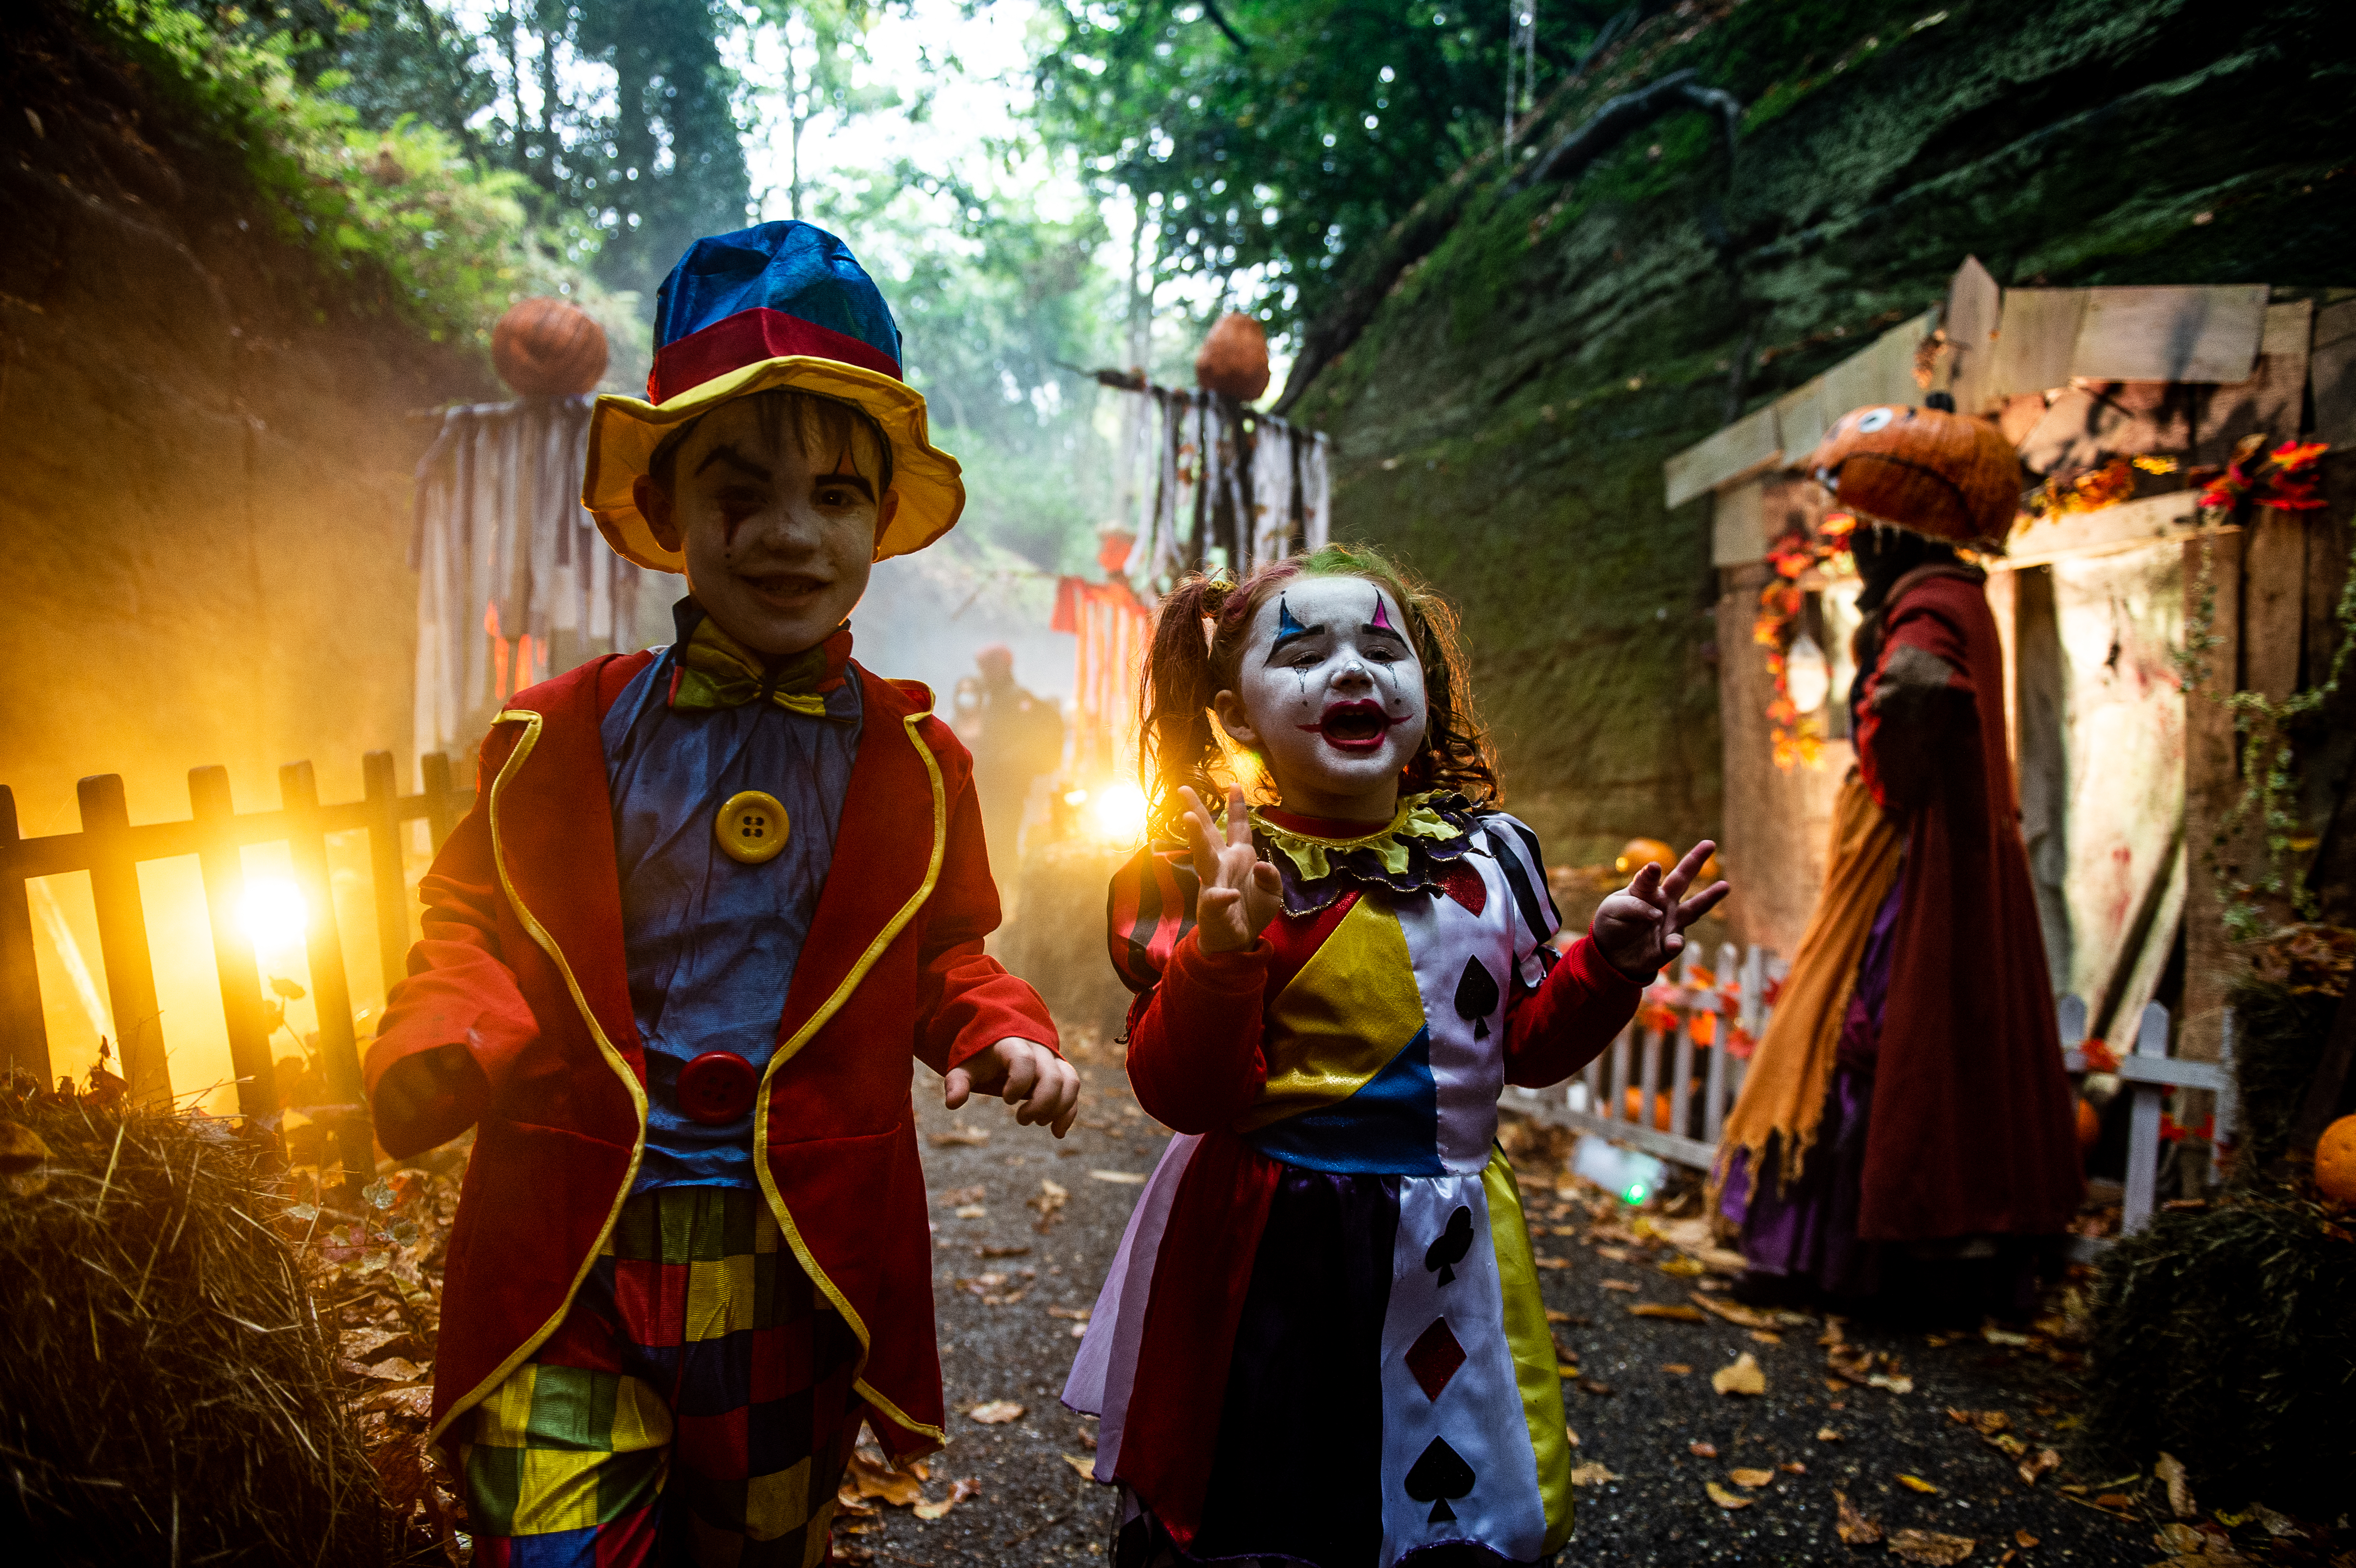 Clown children in Haunted Hollows